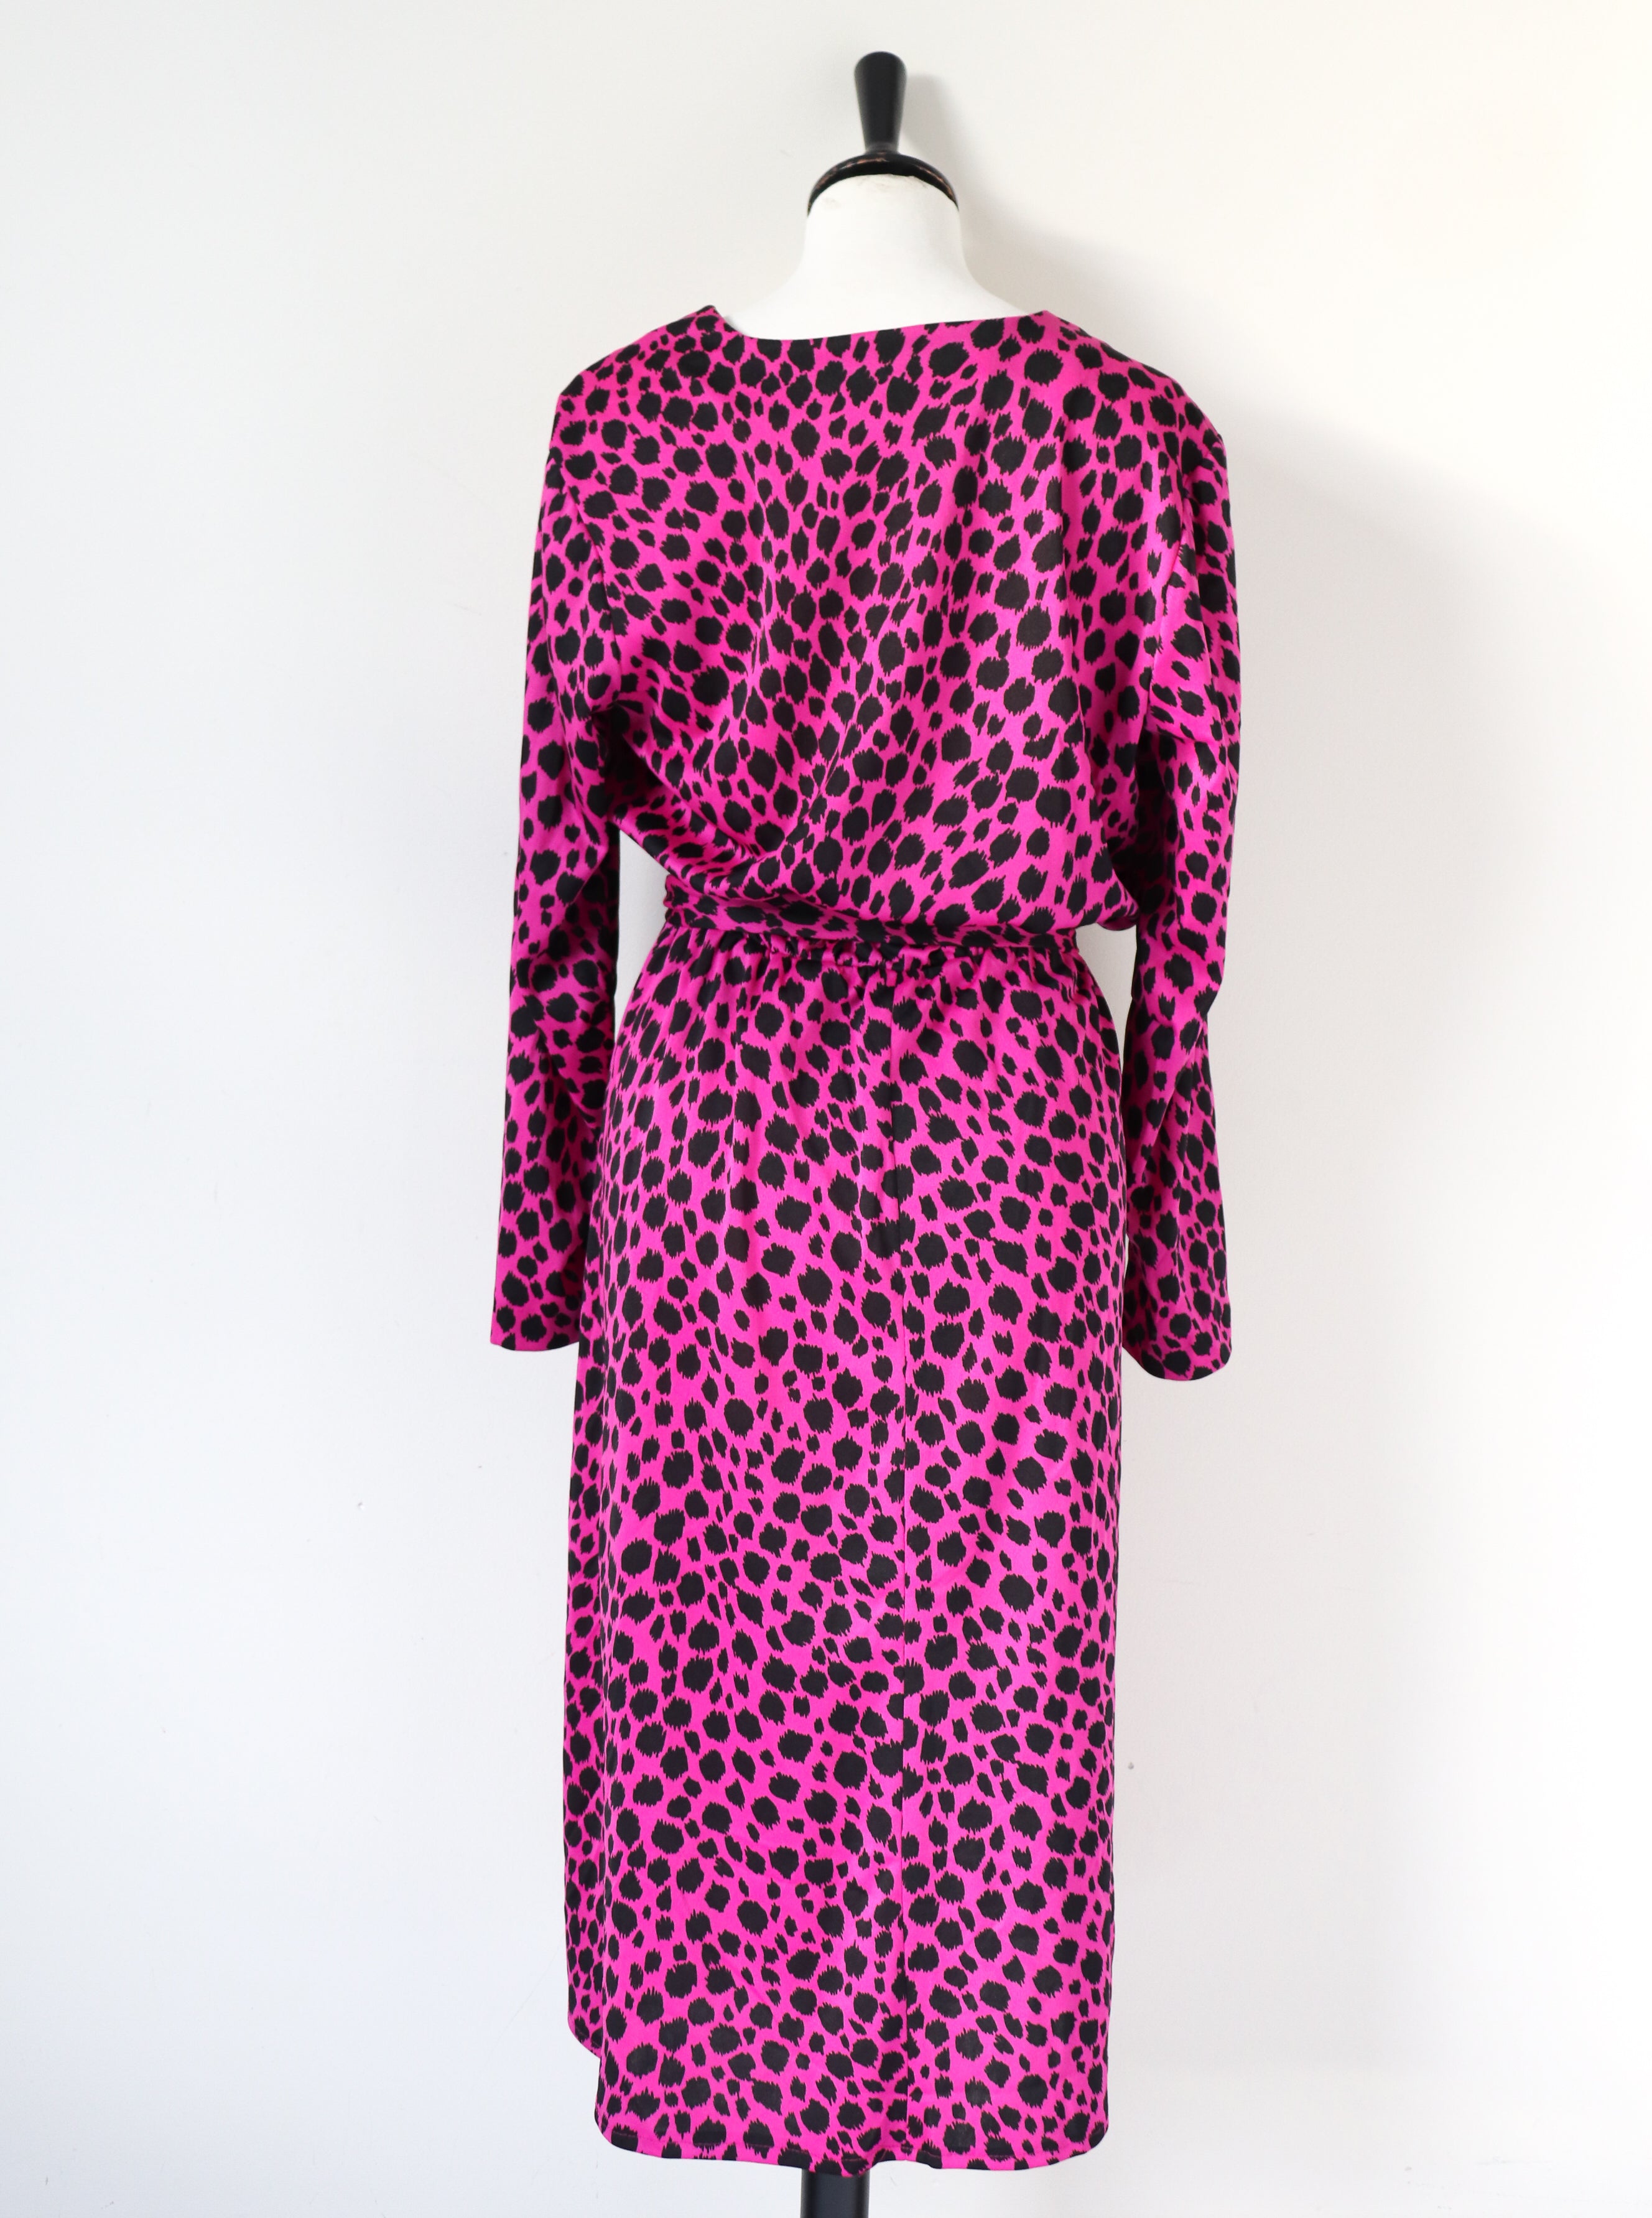 Cresta Pink Leopard Print Dress - Vintage 1980s - Polyester  - Fit L / UK 14